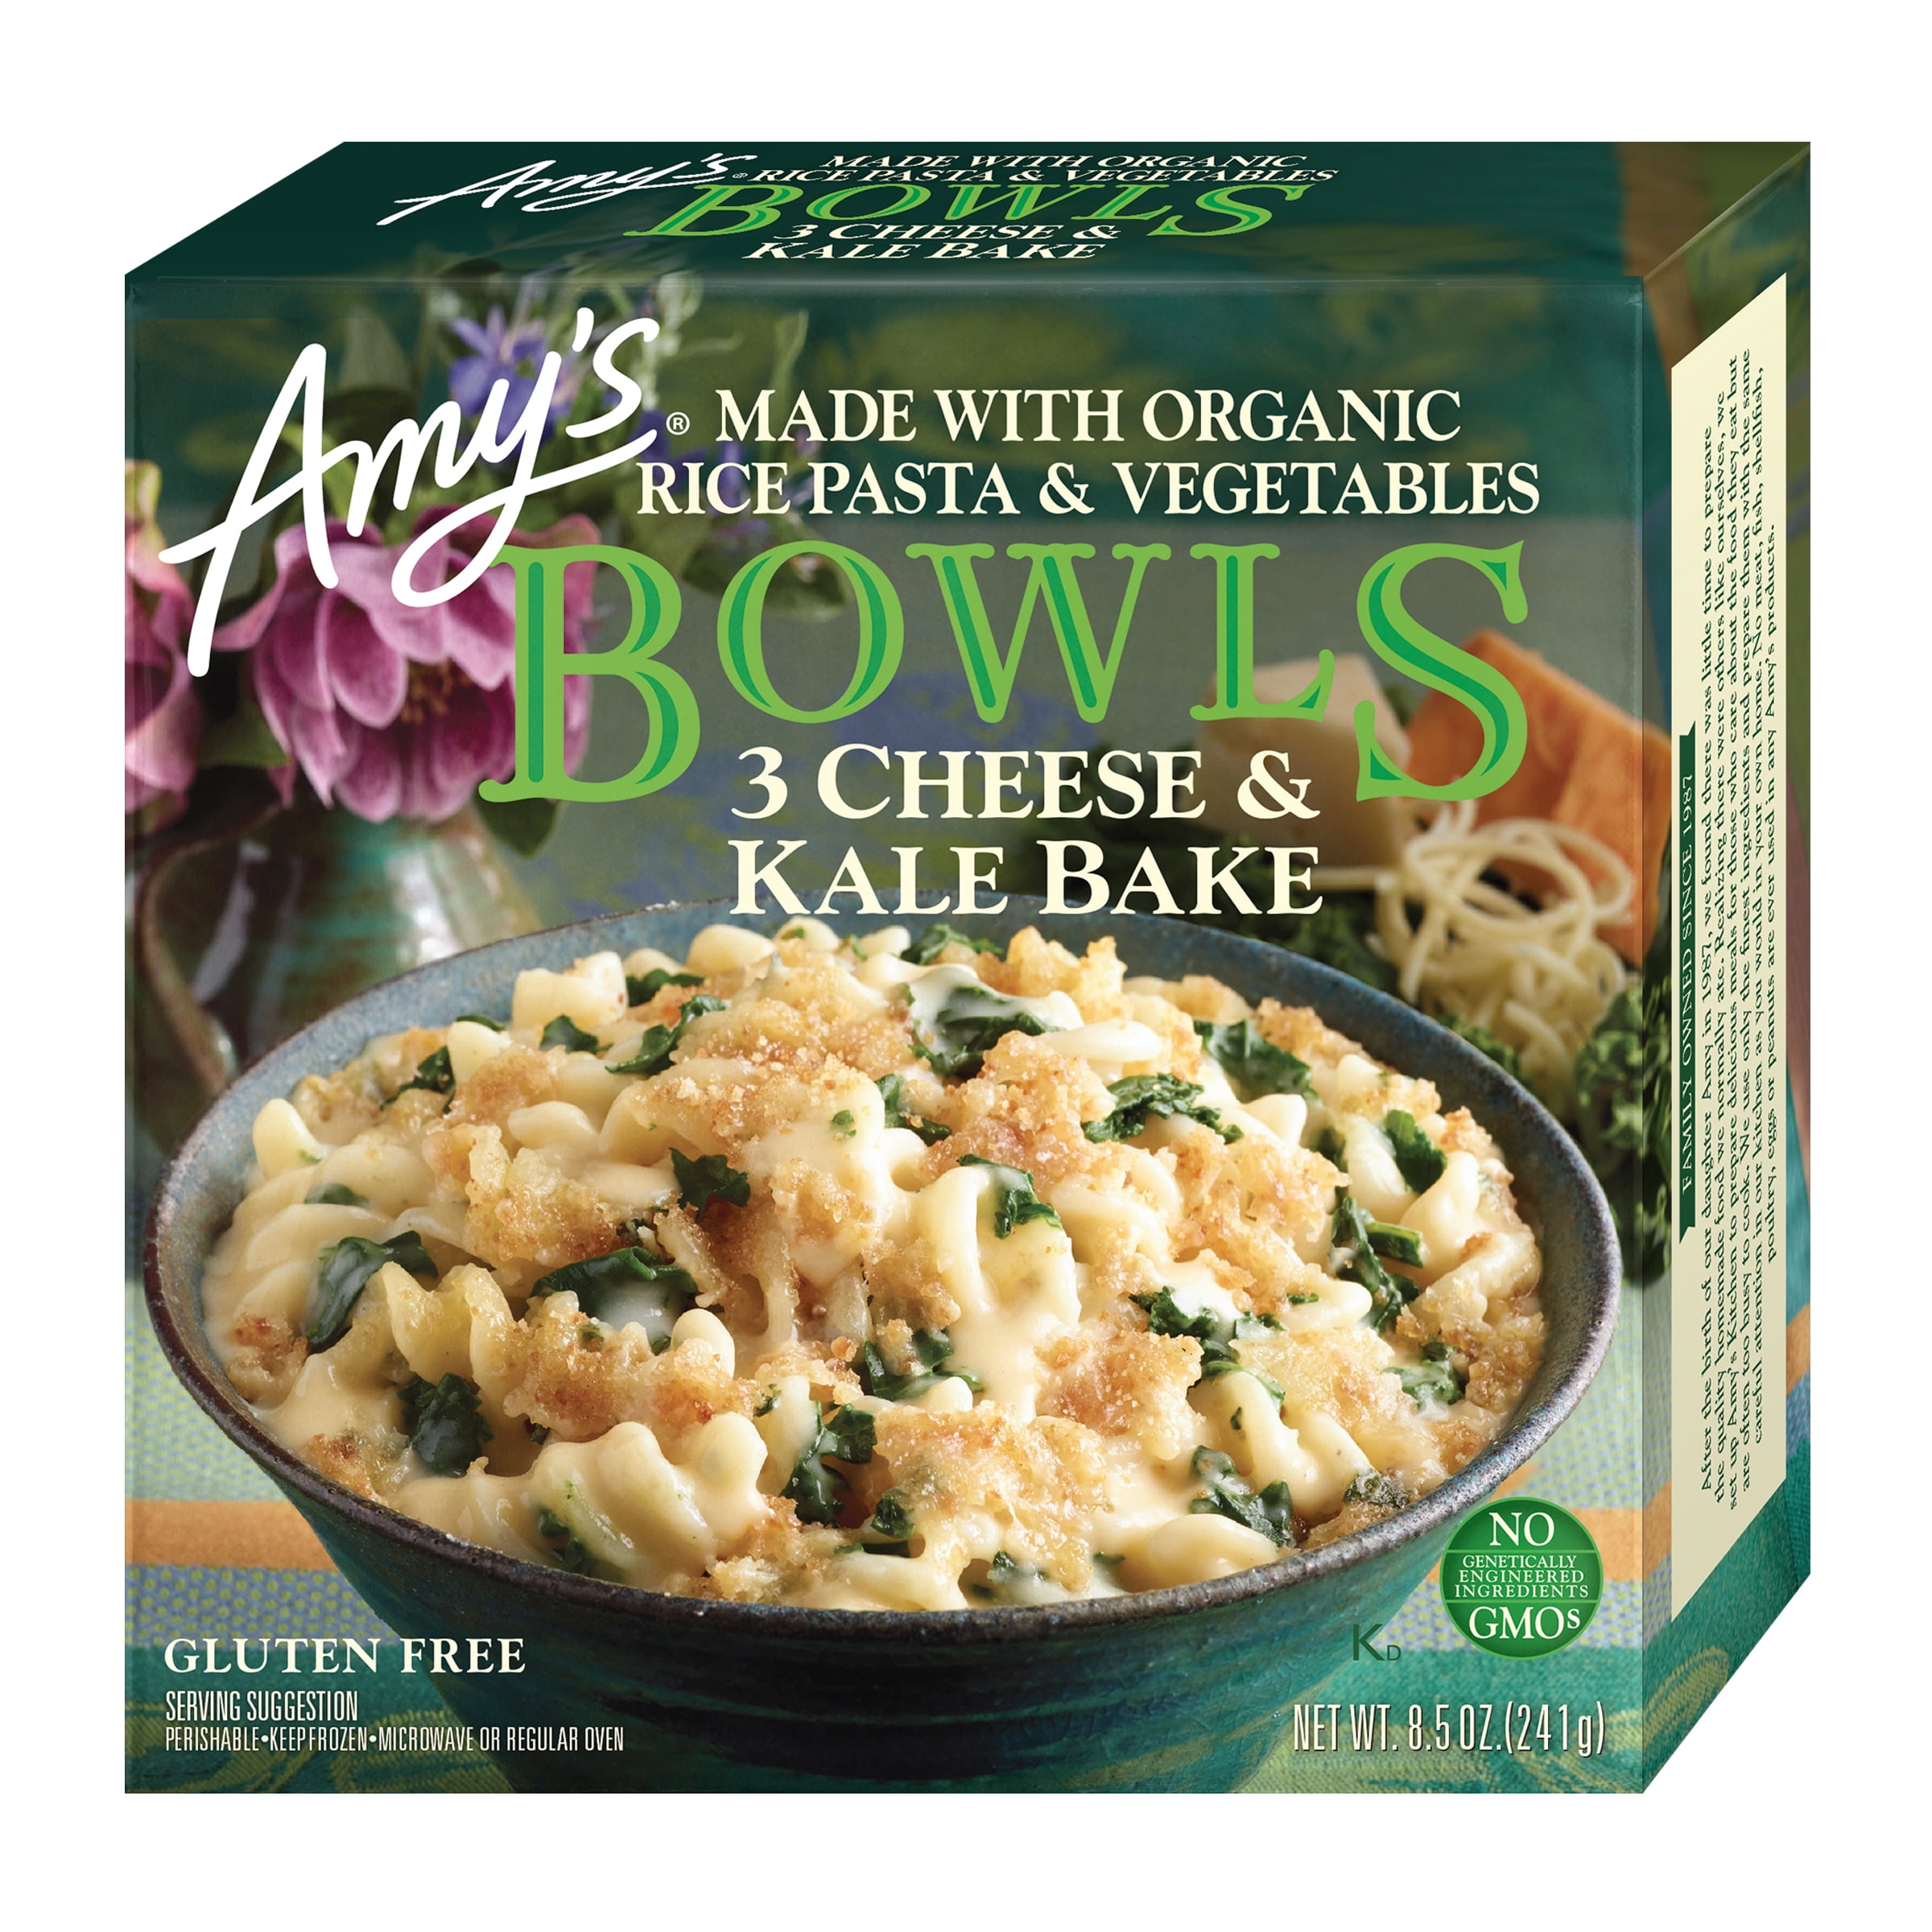 Amy's Kitchen Non GMO 3 Cheese & Kale Bake Bowl, 8.5oz Box (Frozen)